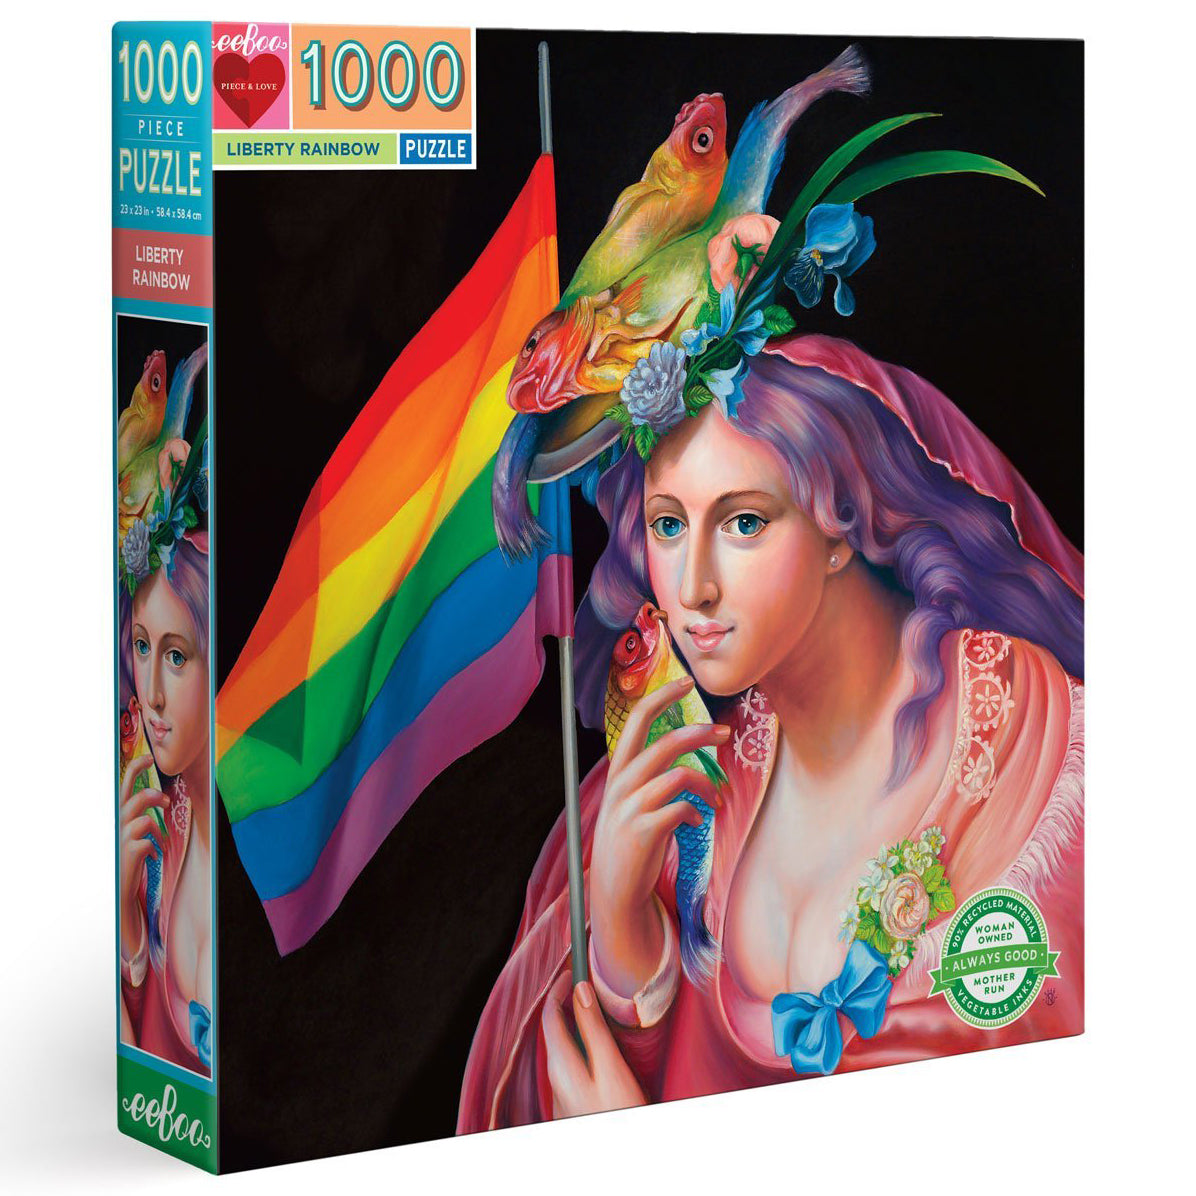 1000 piece puzzle - Liberty Rainbow